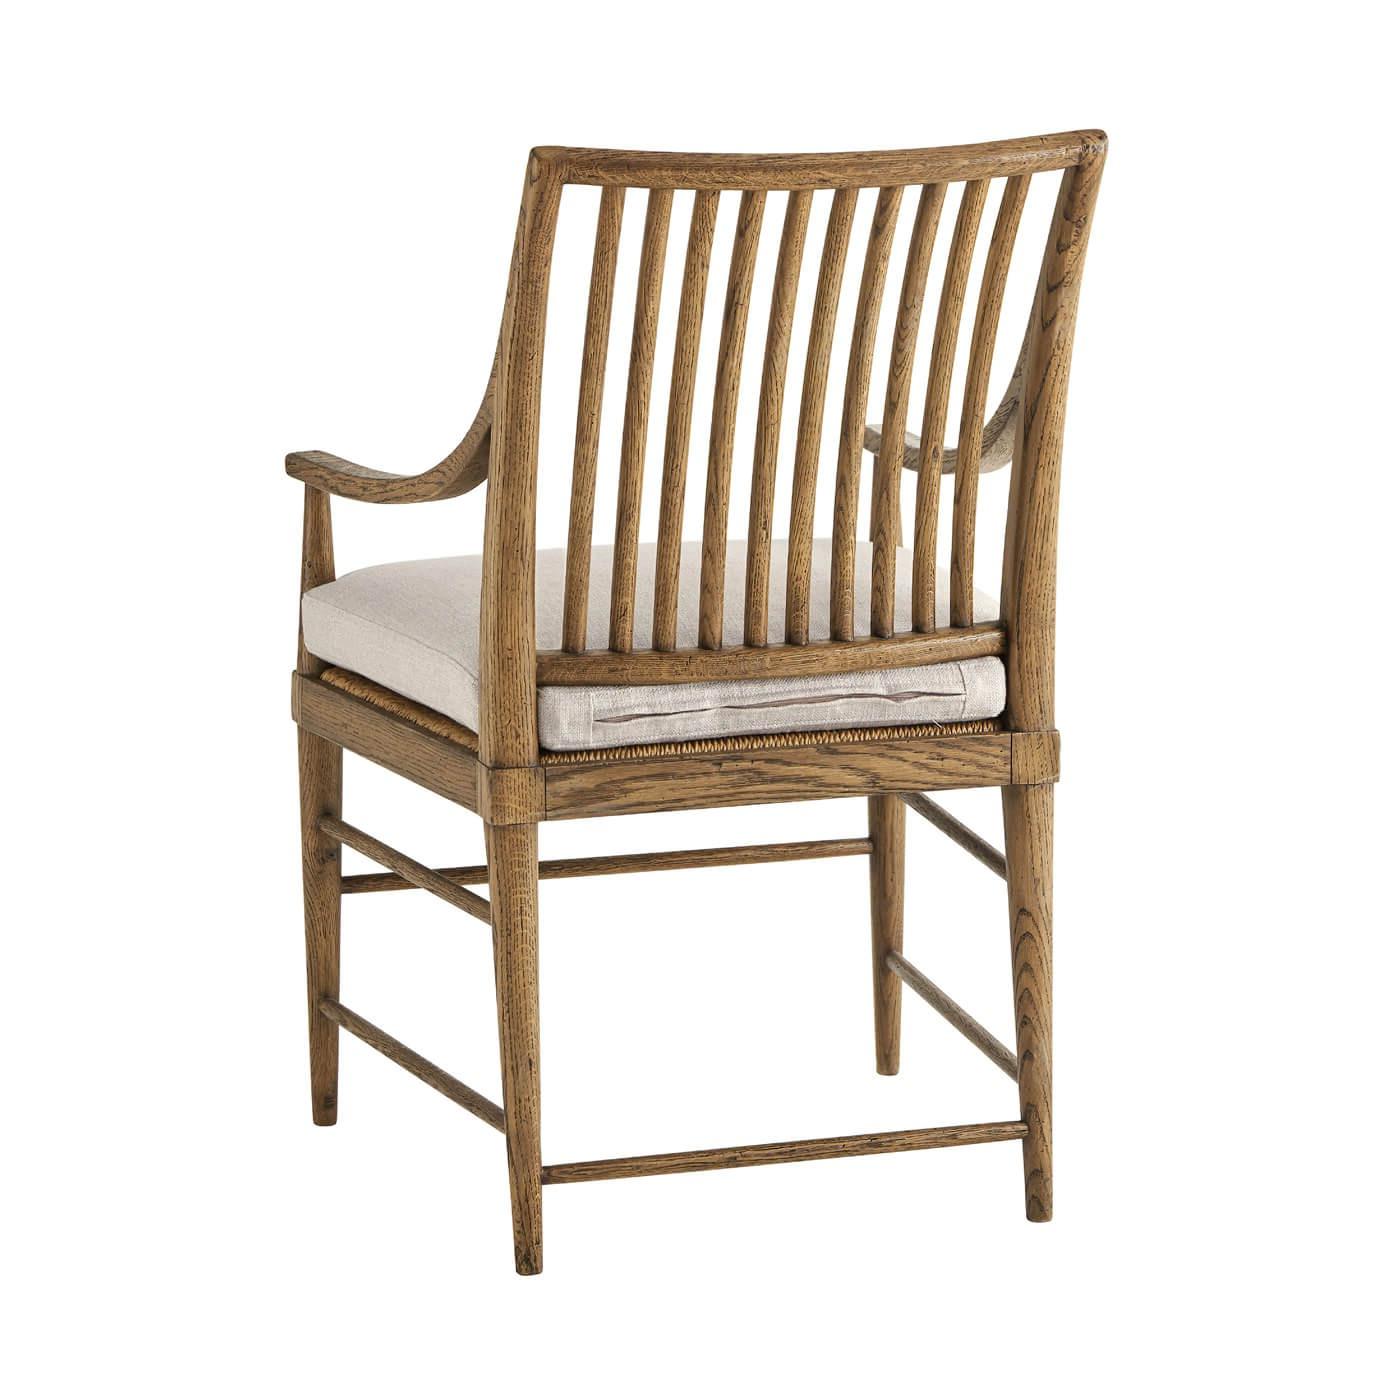 Moderner Esszimmerstuhl aus heller Eiche mit Lattenrücken und konischen Beinen aus Eiche. Dieser schöne Stuhl ist aus rustikalem Eichenfurnier gefertigt, hat eine Lattenrost-Rückenlehne, ist gepolstert und locker gepolstert.

Abgebildet in Dawn